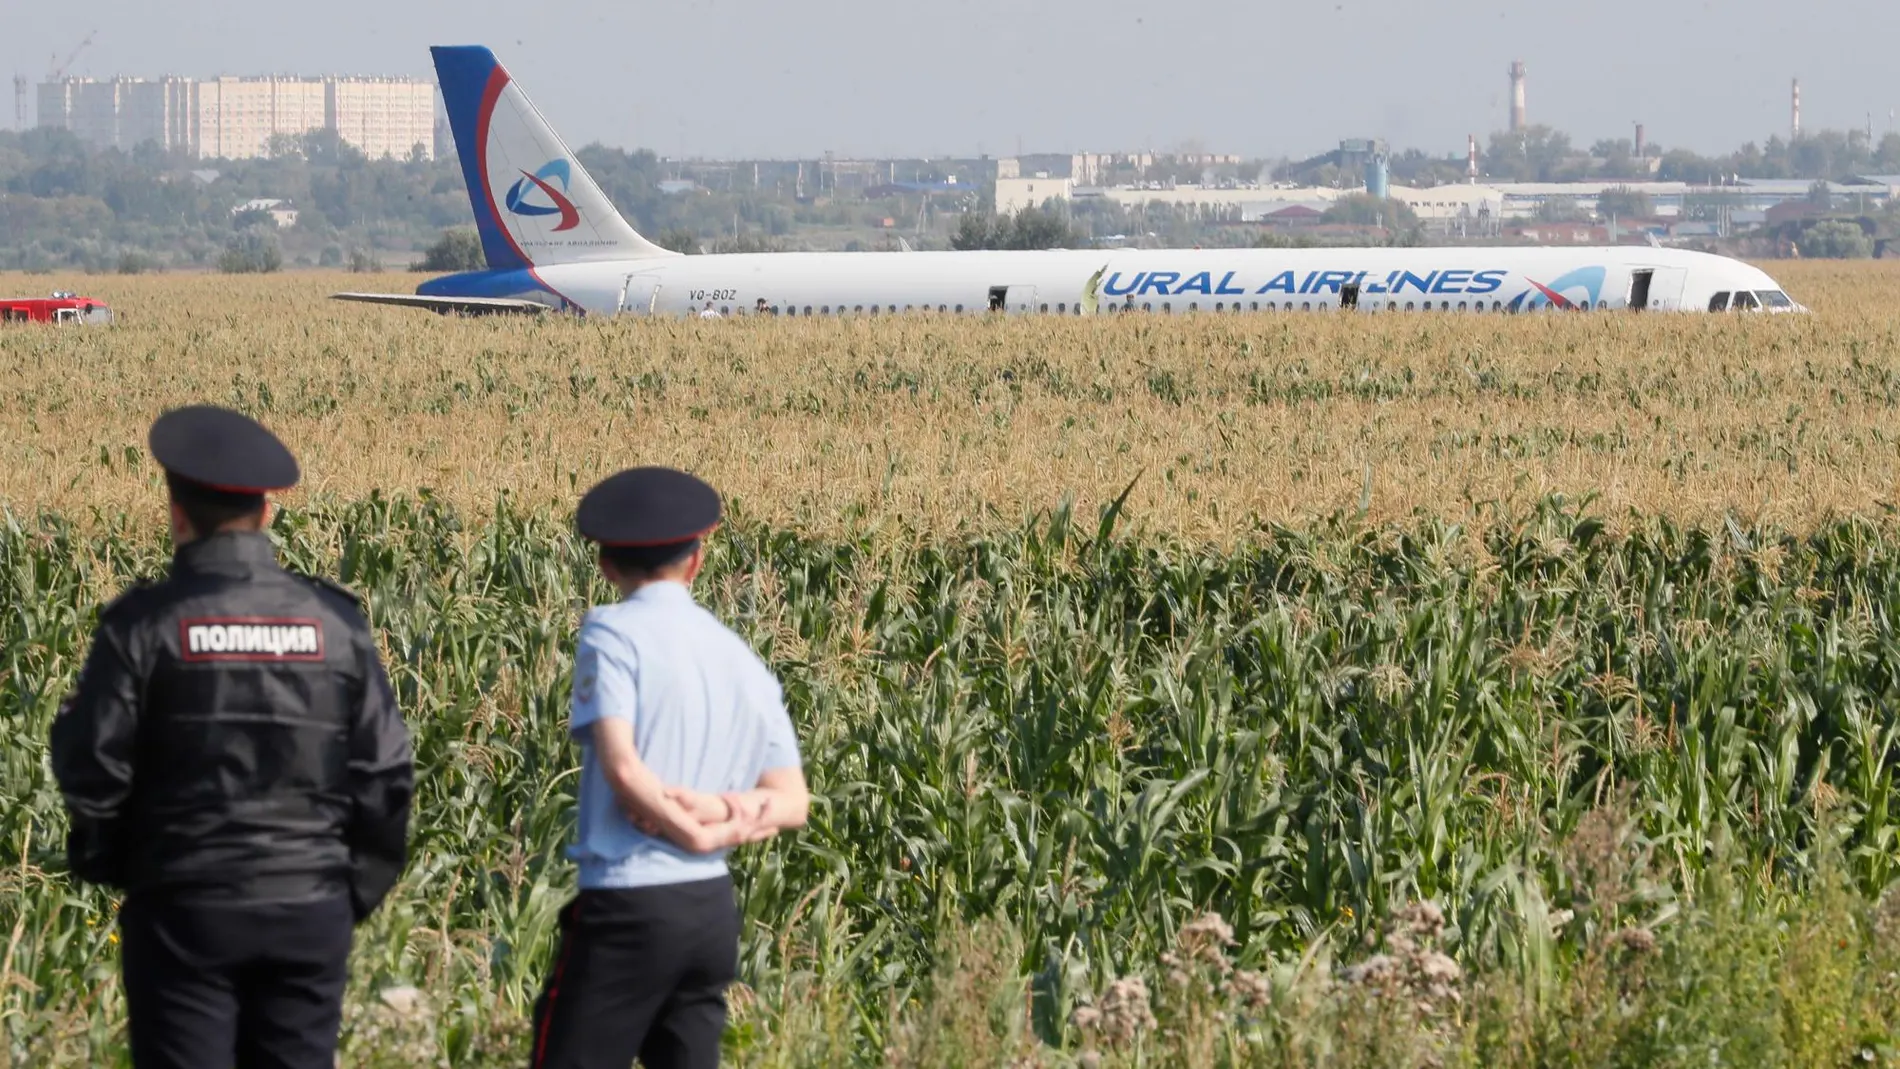 Imágen del A.321 que ha aterrizado en un campo de maíz en Moscú